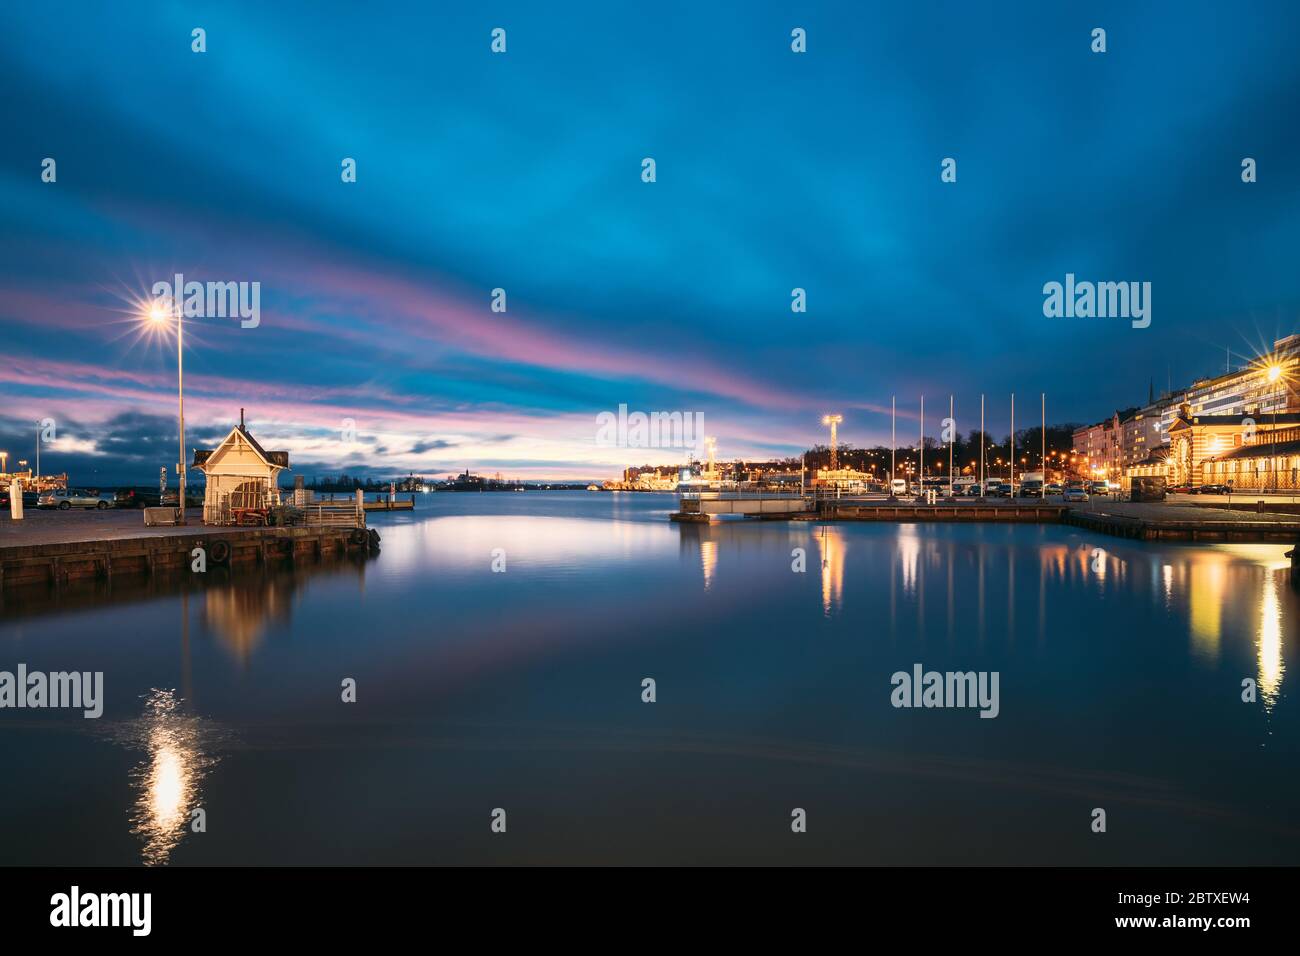 Helsinki, Finlandia. Paesaggio con il molo della città, Jetty al tramonto all'alba. Blue Sky si riflette nella tranquilla superficie dell'acqua di mare. Ormeggio in illuminazione Foto Stock